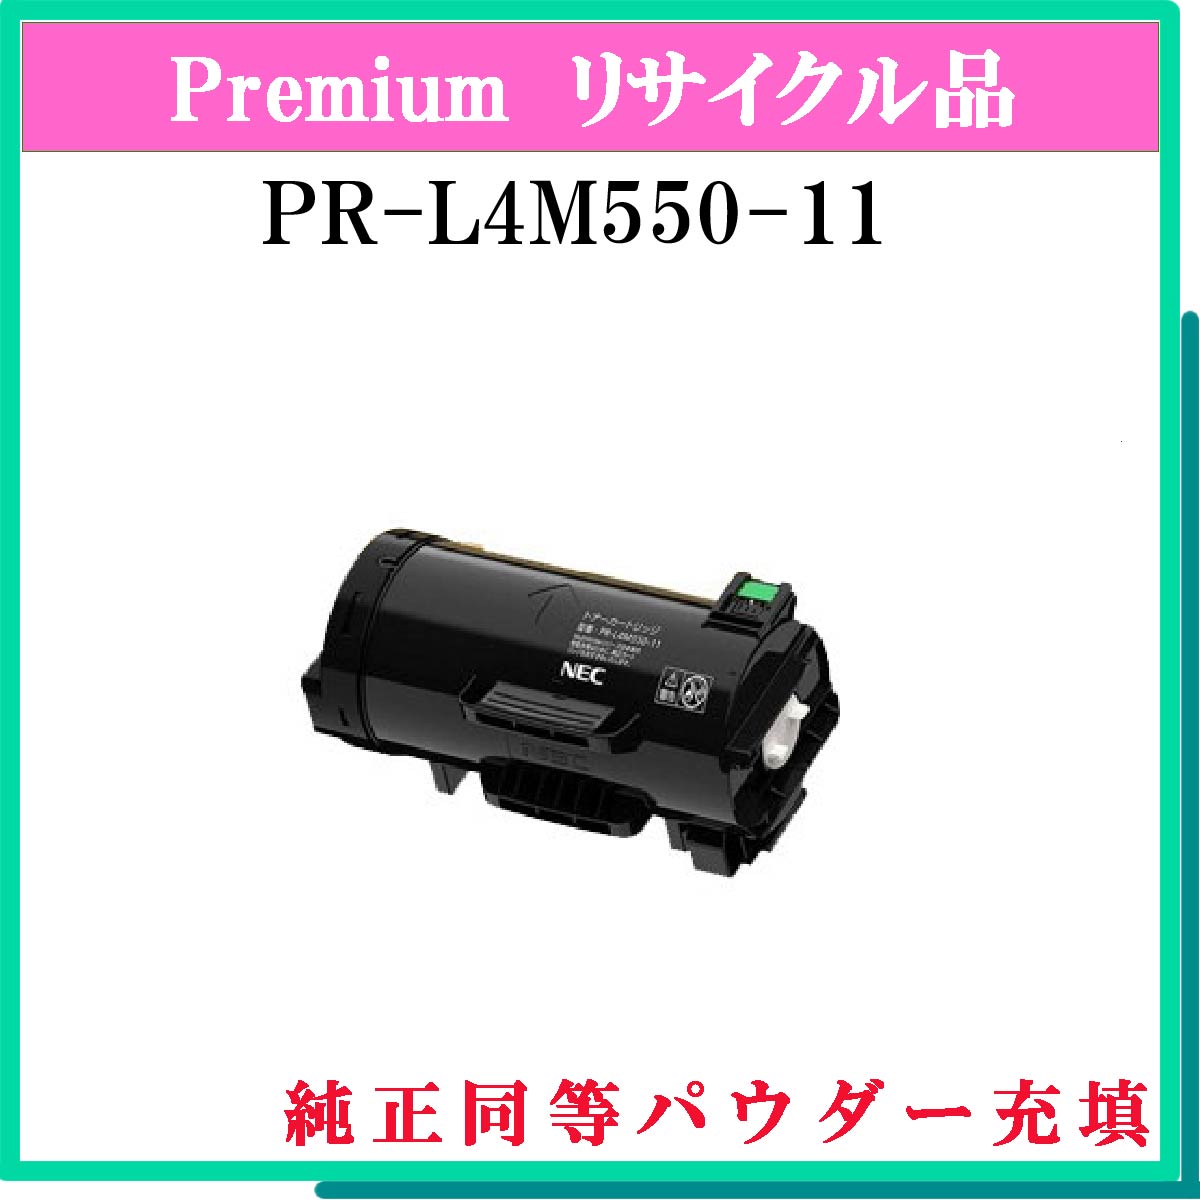 PR-L4M550-11 (純正同等ﾊﾟｳﾀﾞｰ)